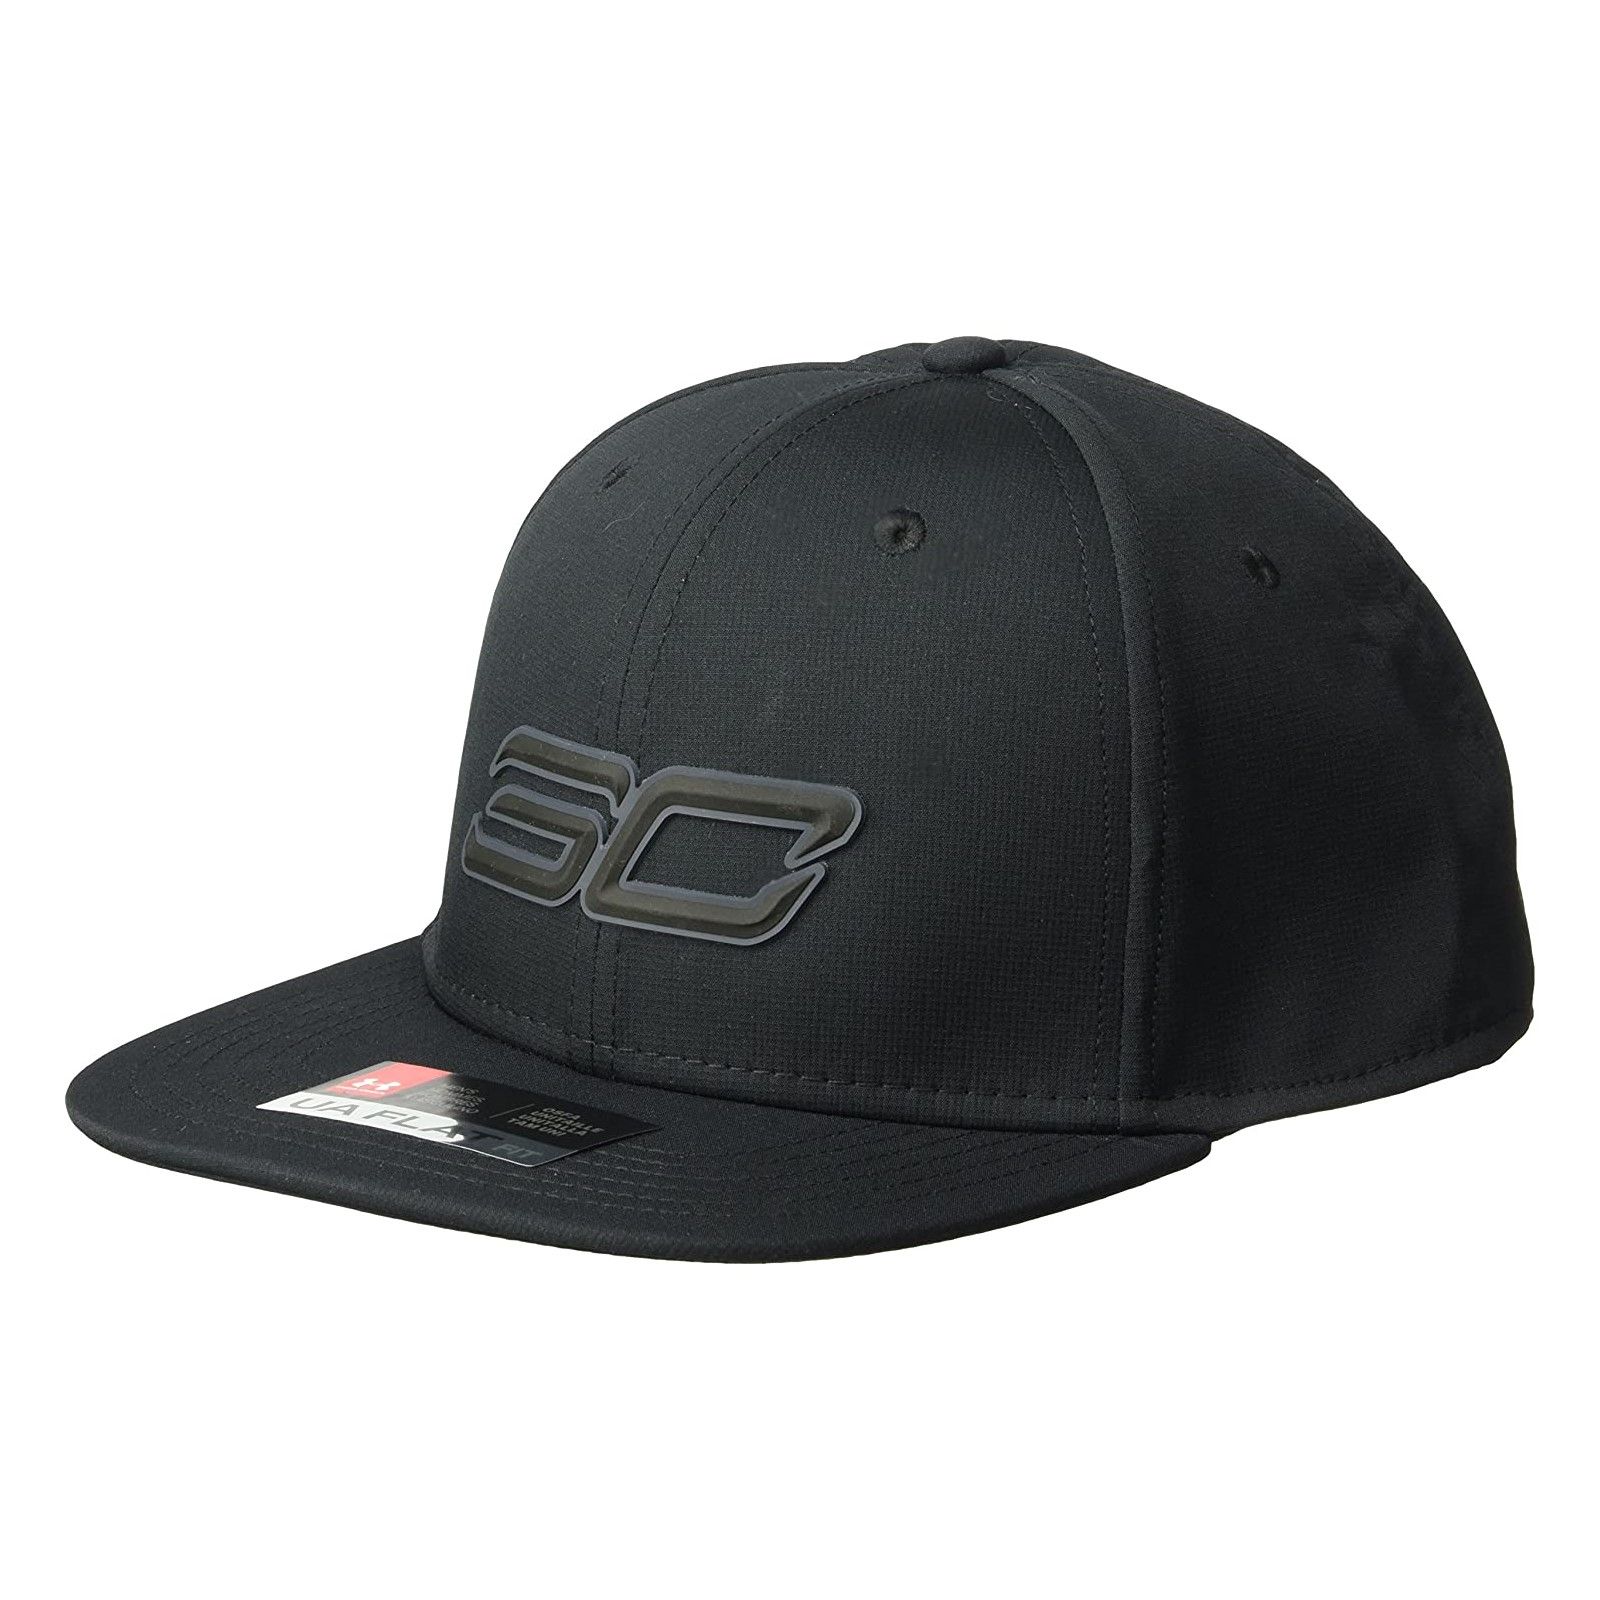 کلاه کپ مردانه آندر آرمور مدل SC30 Core1307011-001 -  - 1